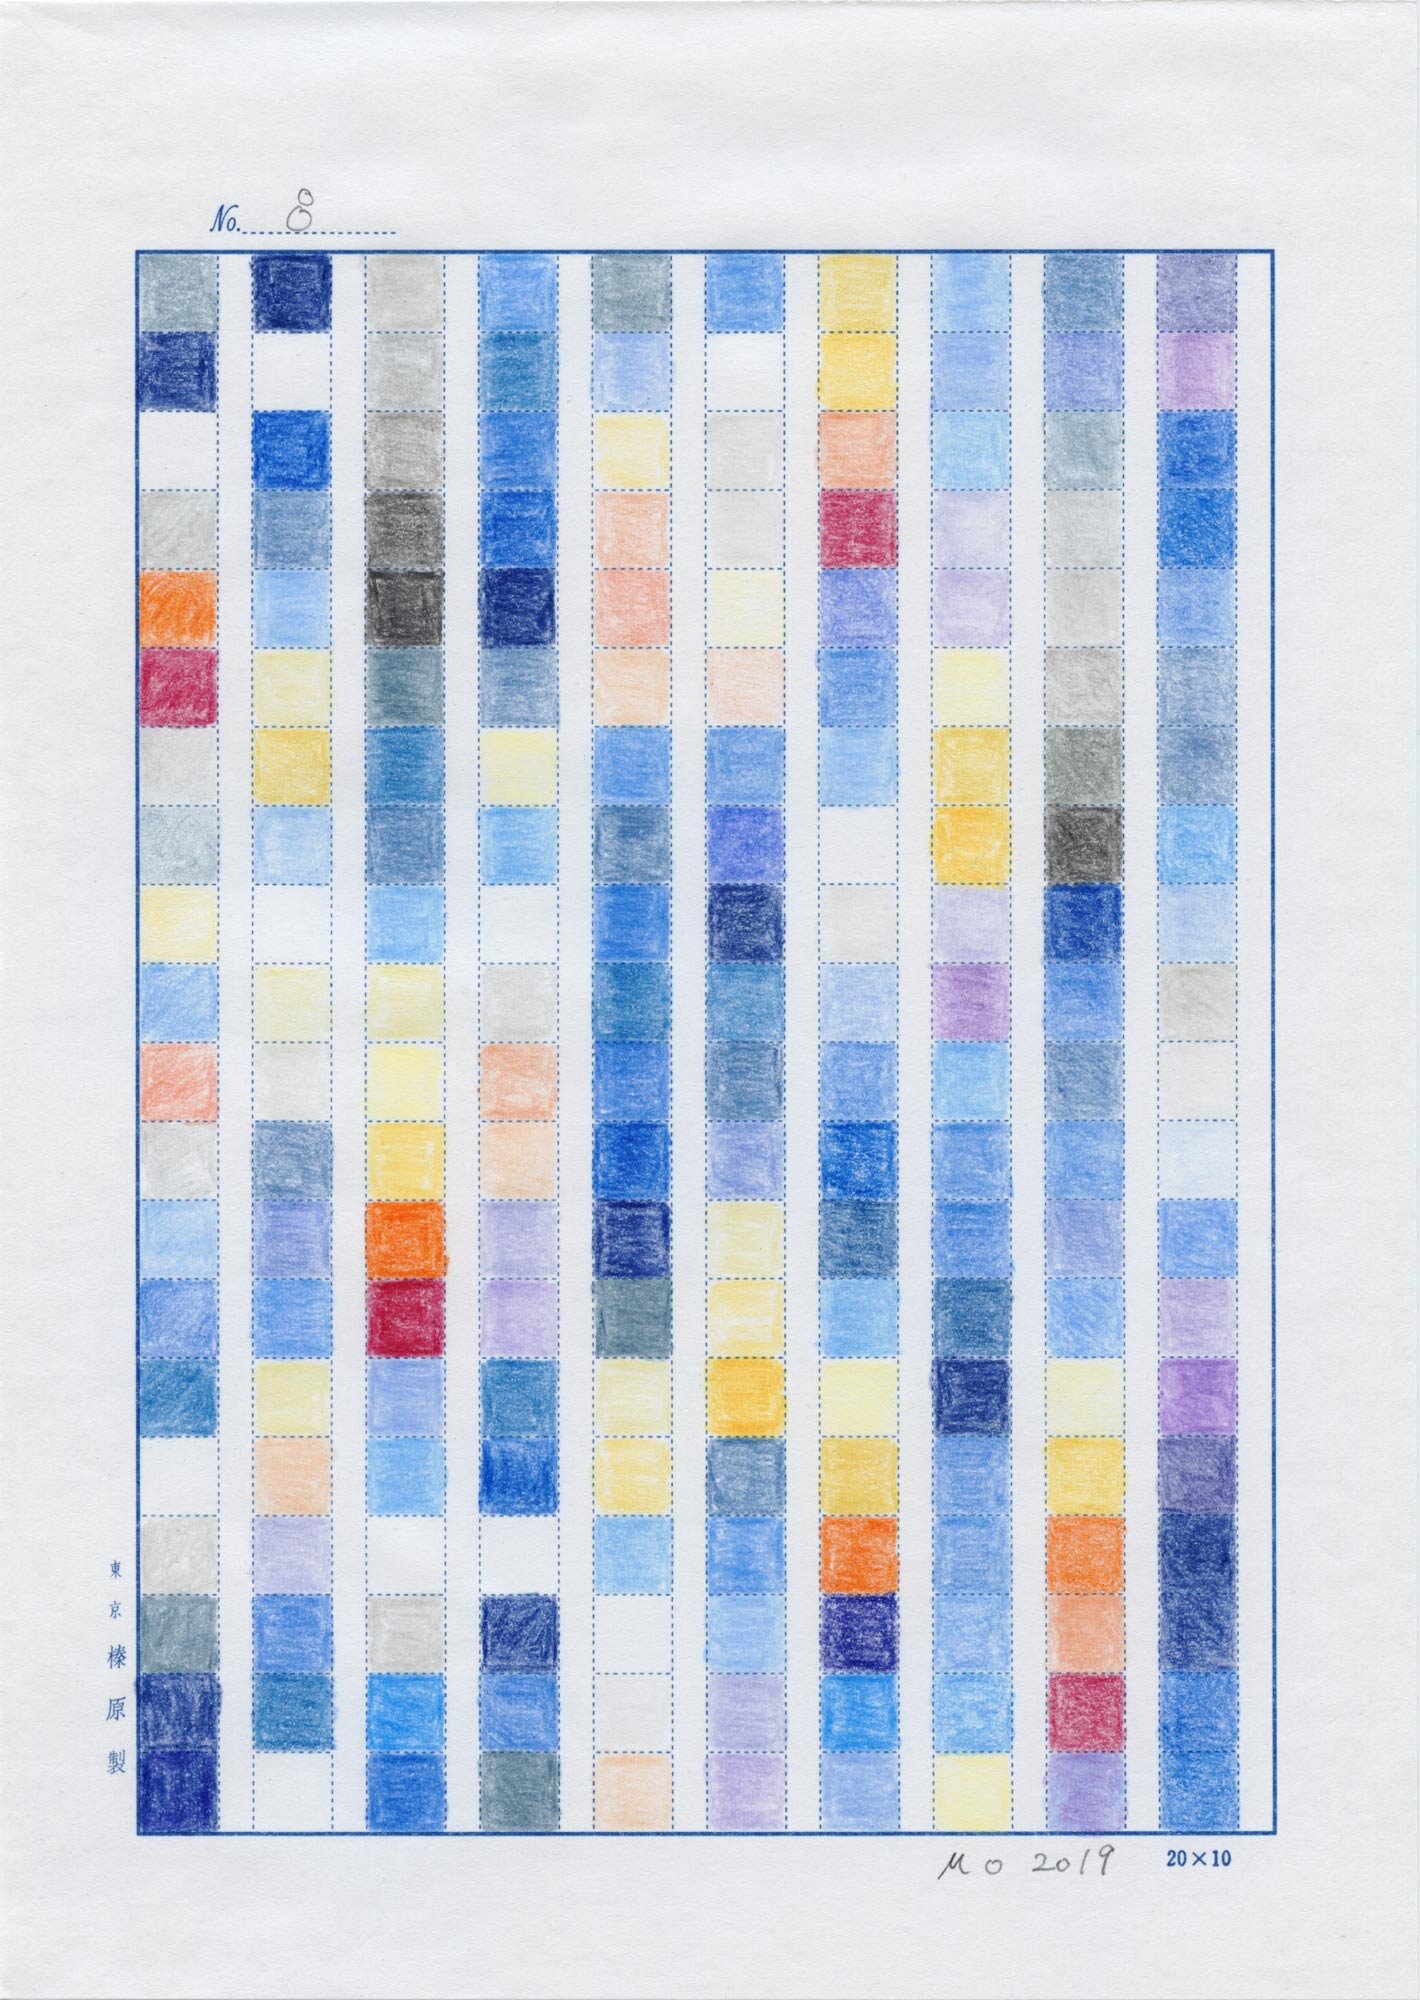    日日是好日   (No.8, 1983-2019, an ongoing project), color pencil on manuscript paper and international mail, 9-49/64” x 6-15/16” (24.8 cm x 17.6 cm), sent to Taito-ku, Tokyo Japan from LIC NY, USA 